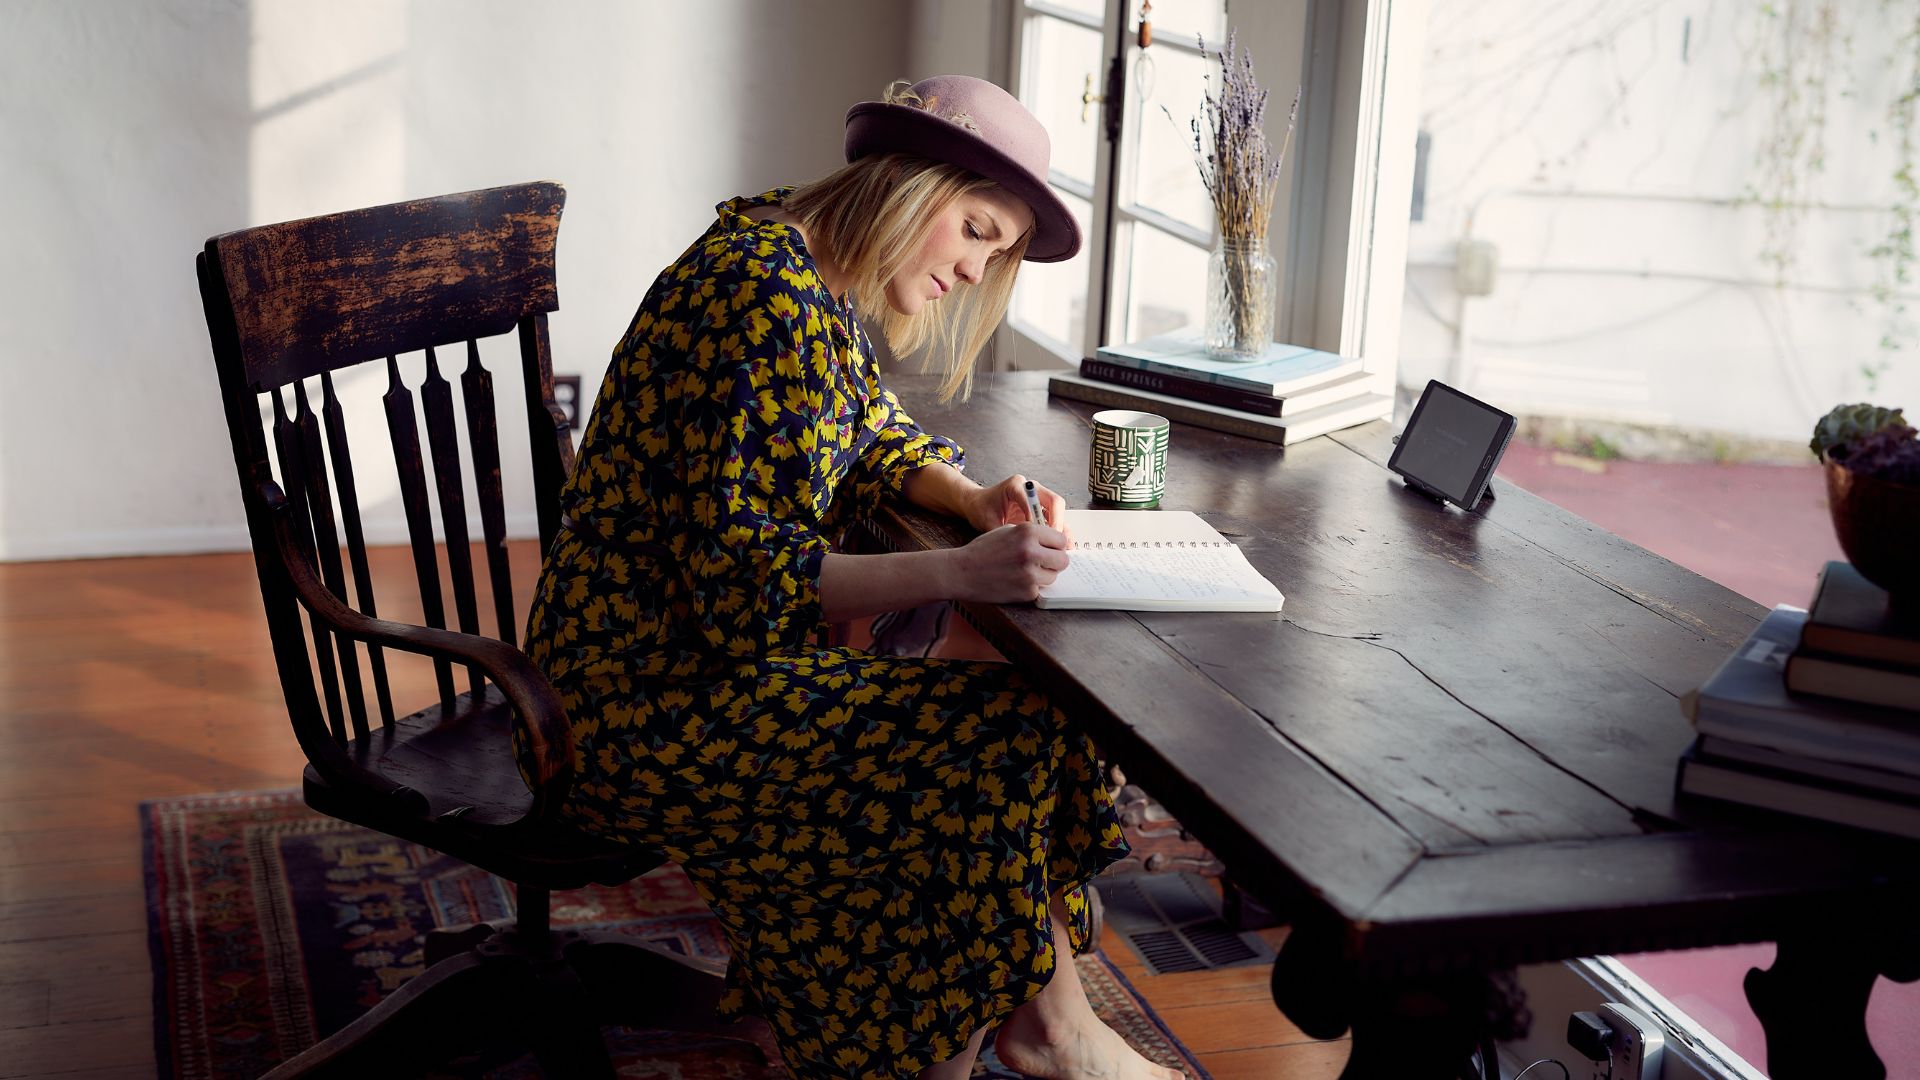 Une femme travaillant dans un environnement professionnel, se livrant calmement à l'écriture d'un livre à son bureau.